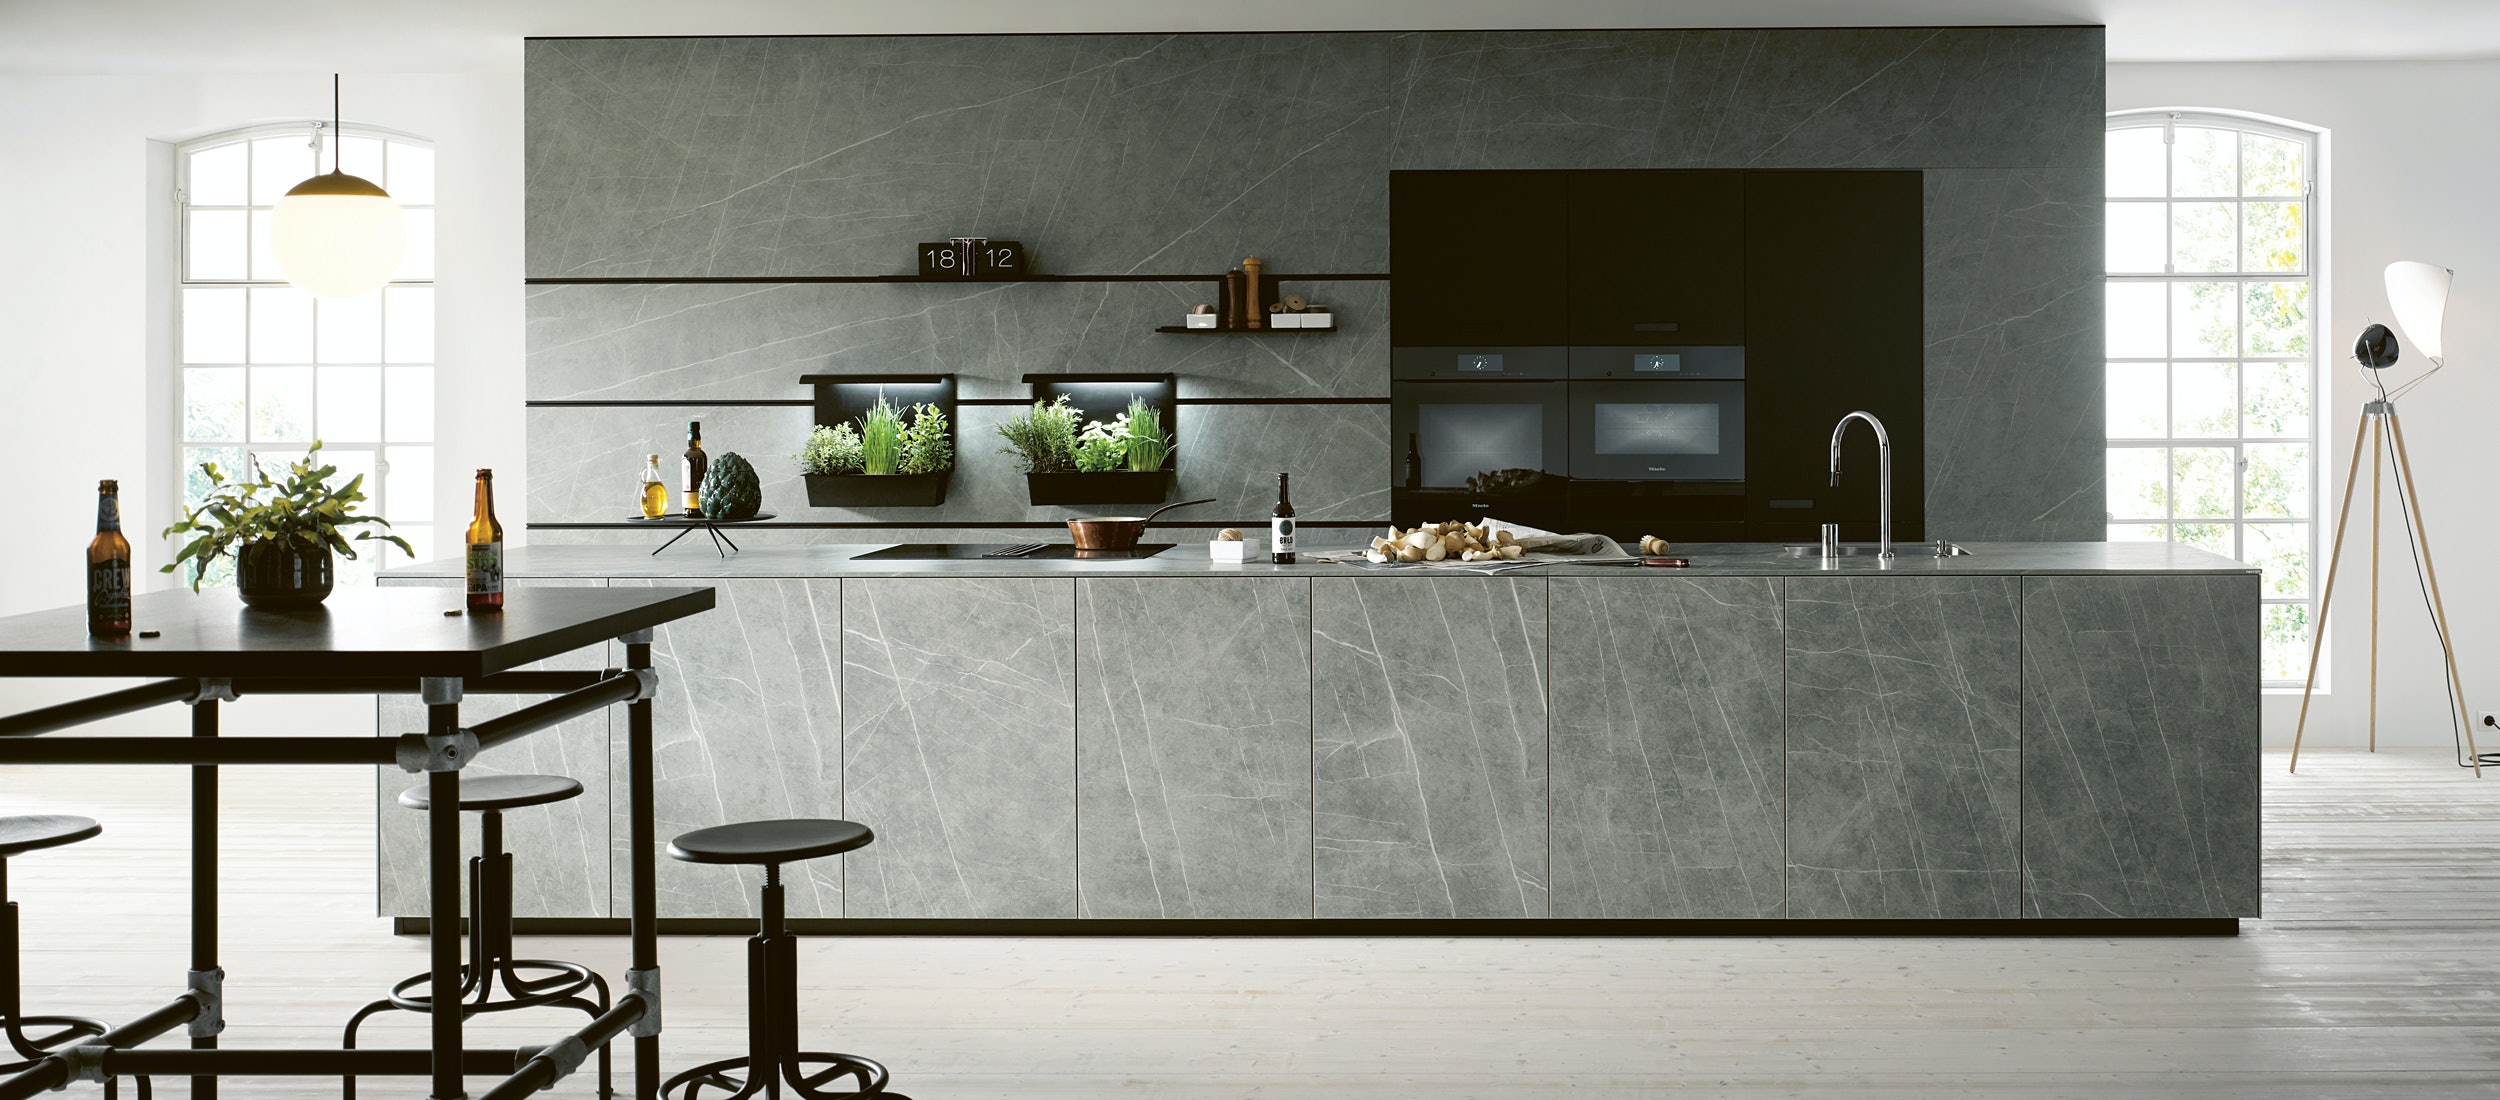 next125 NX950 keuken met keramisch front in marmer grigio